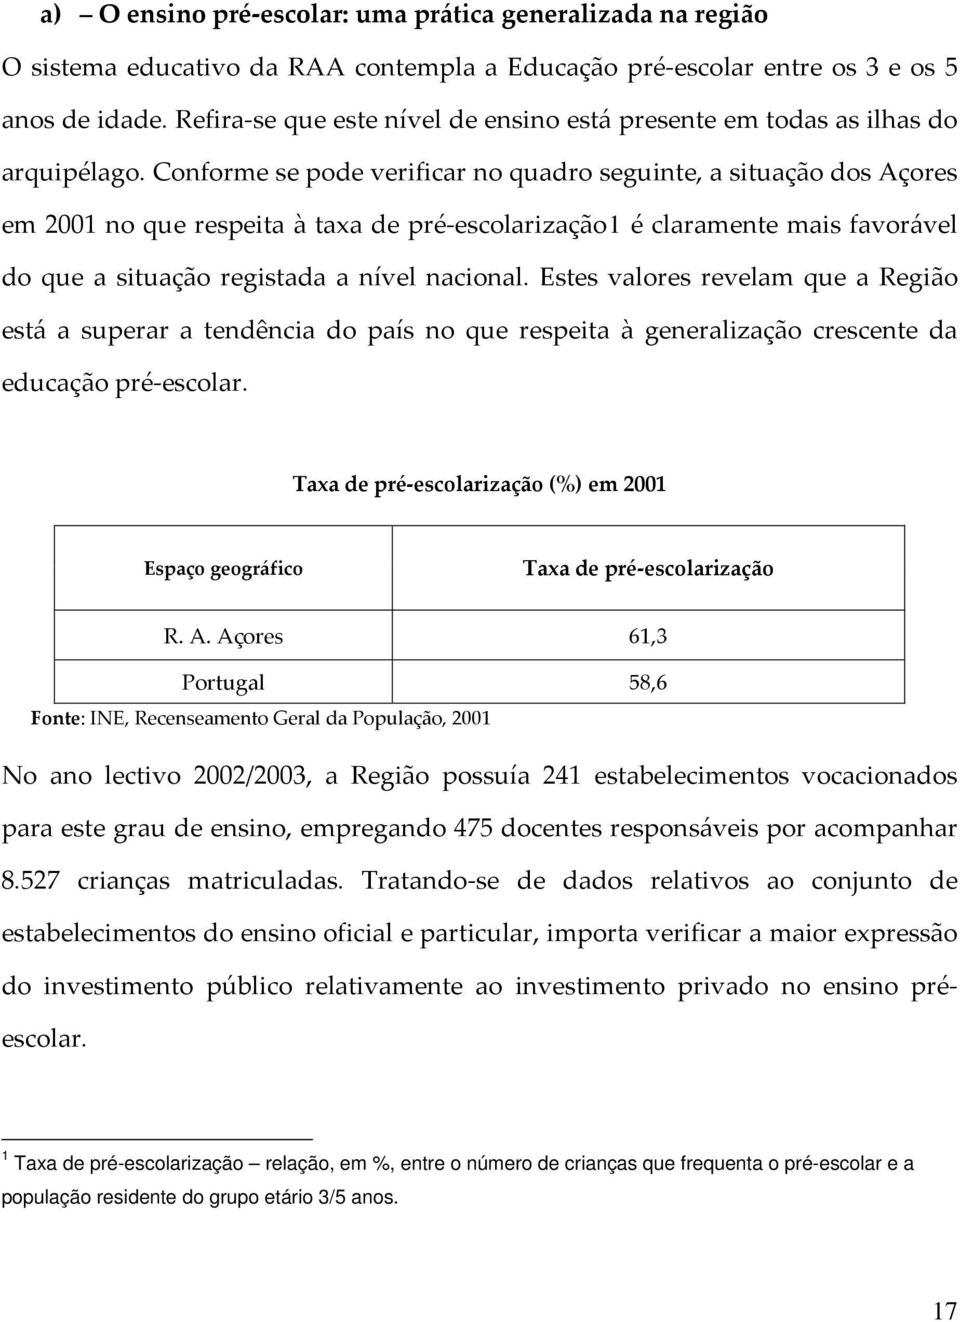 Conforme se pode verificar no quadro seguinte, a situação dos Açores em 2001 no que respeita à taxa de pré-escolarização1 é claramente mais favorável do que a situação registada a nível nacional.